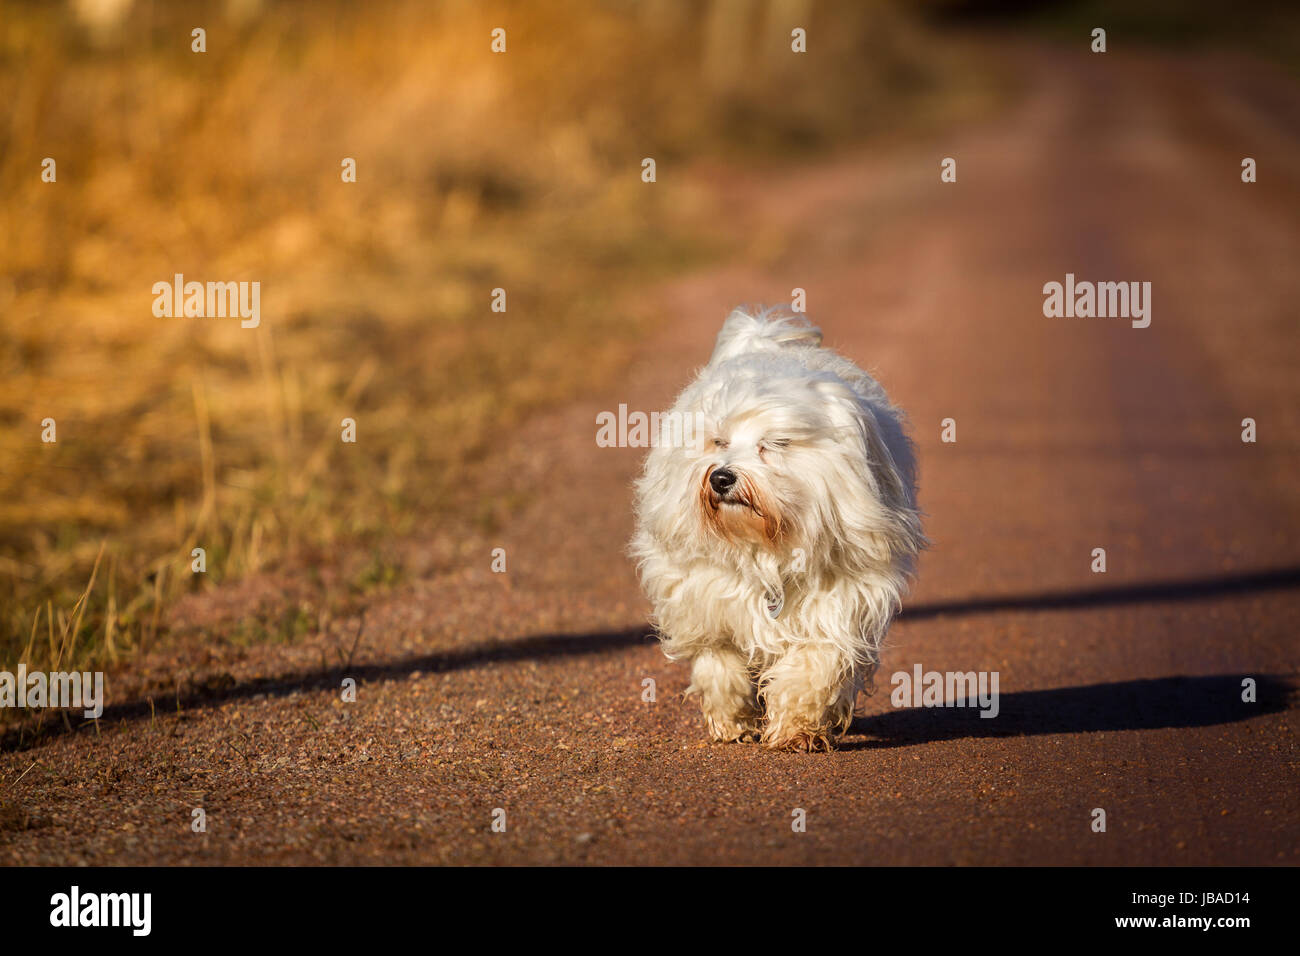 Ein Kleiner Hund läuft auf einem Feldweg gemächlich Richtung Sonnenuntergang. Im Hintergrund verliert sich der Weg in der Ferne. Stock Photo